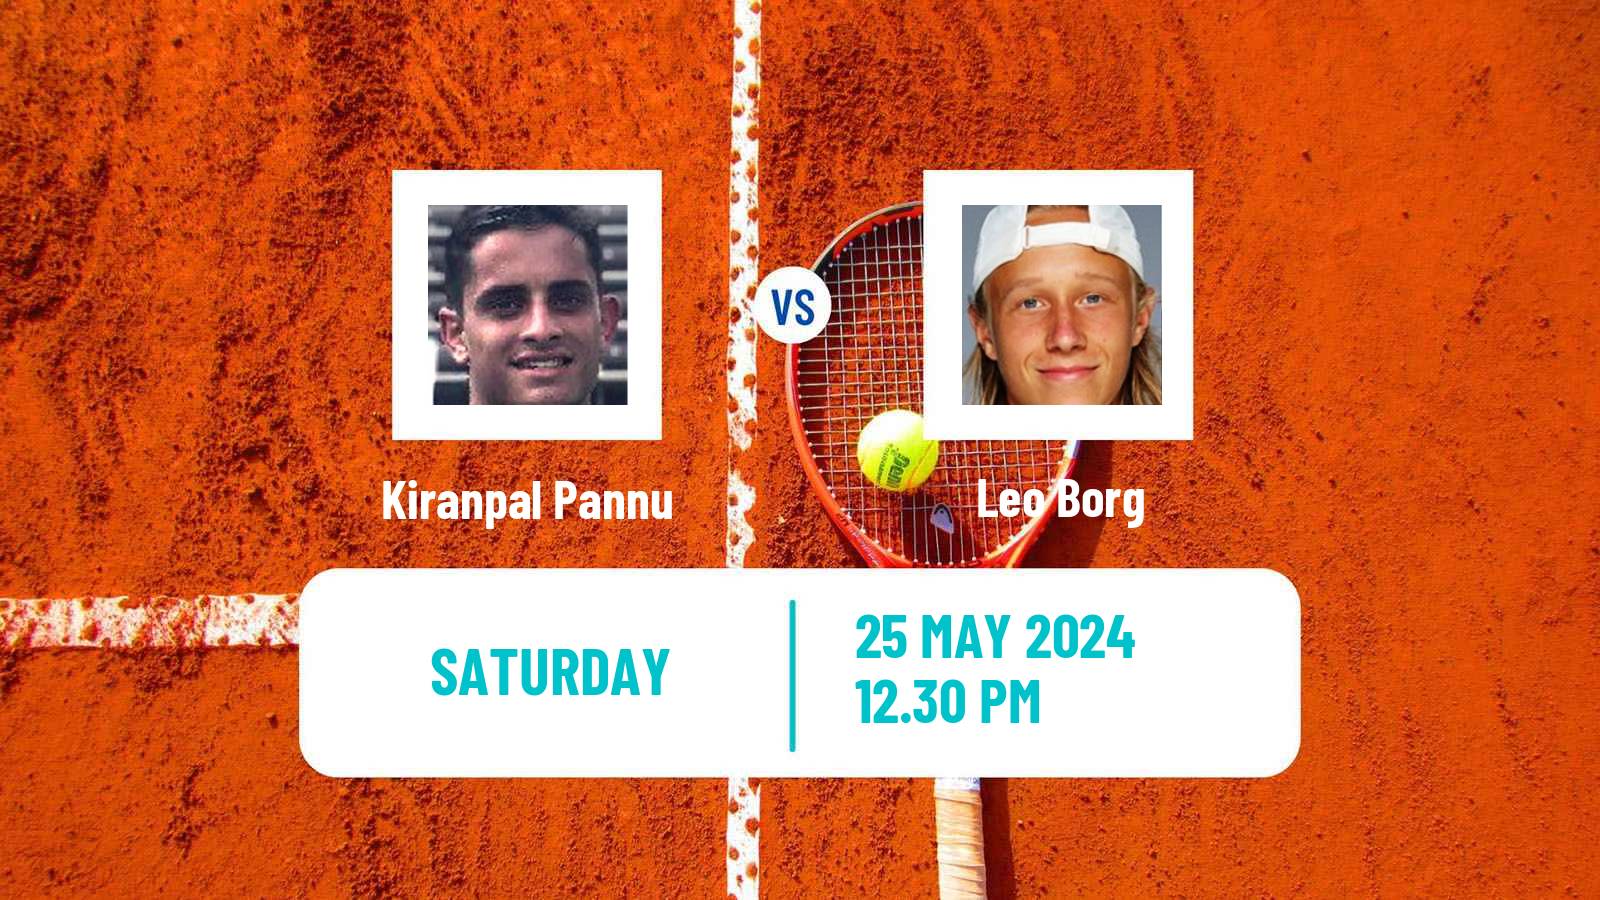 Tennis ITF M15 Kingston 2 Men Kiranpal Pannu - Leo Borg